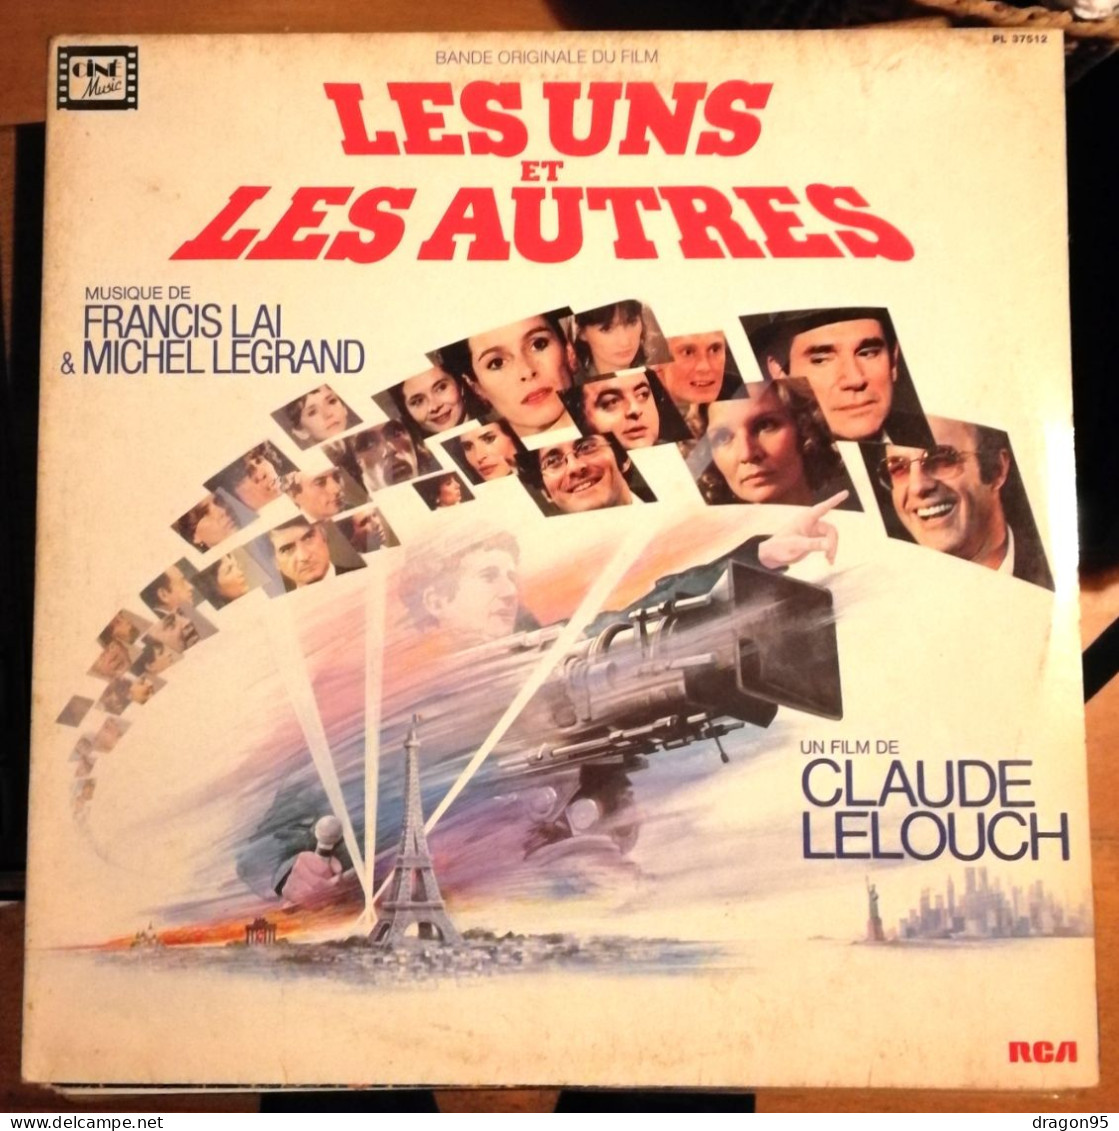 LP Francis LAI / Michel LEGRAND : B.O. Les Uns Et Les Autres - RCA PL 37512 - France - 1981 - Soundtracks, Film Music